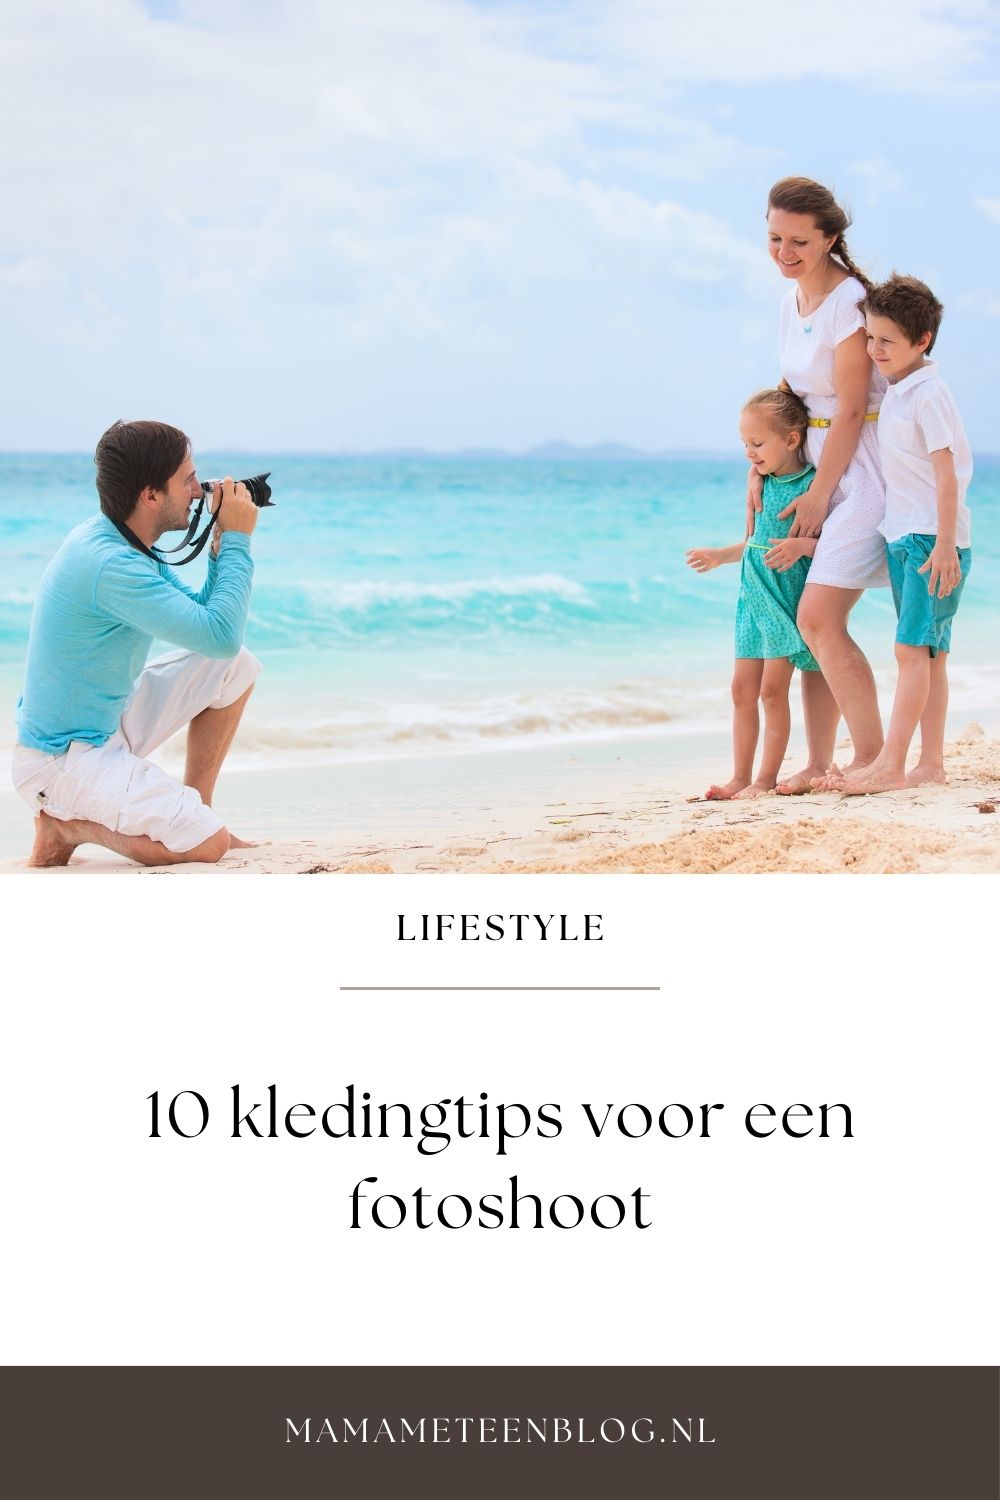 10 kledingtips voor fotoshoot mamameteenblog.nl